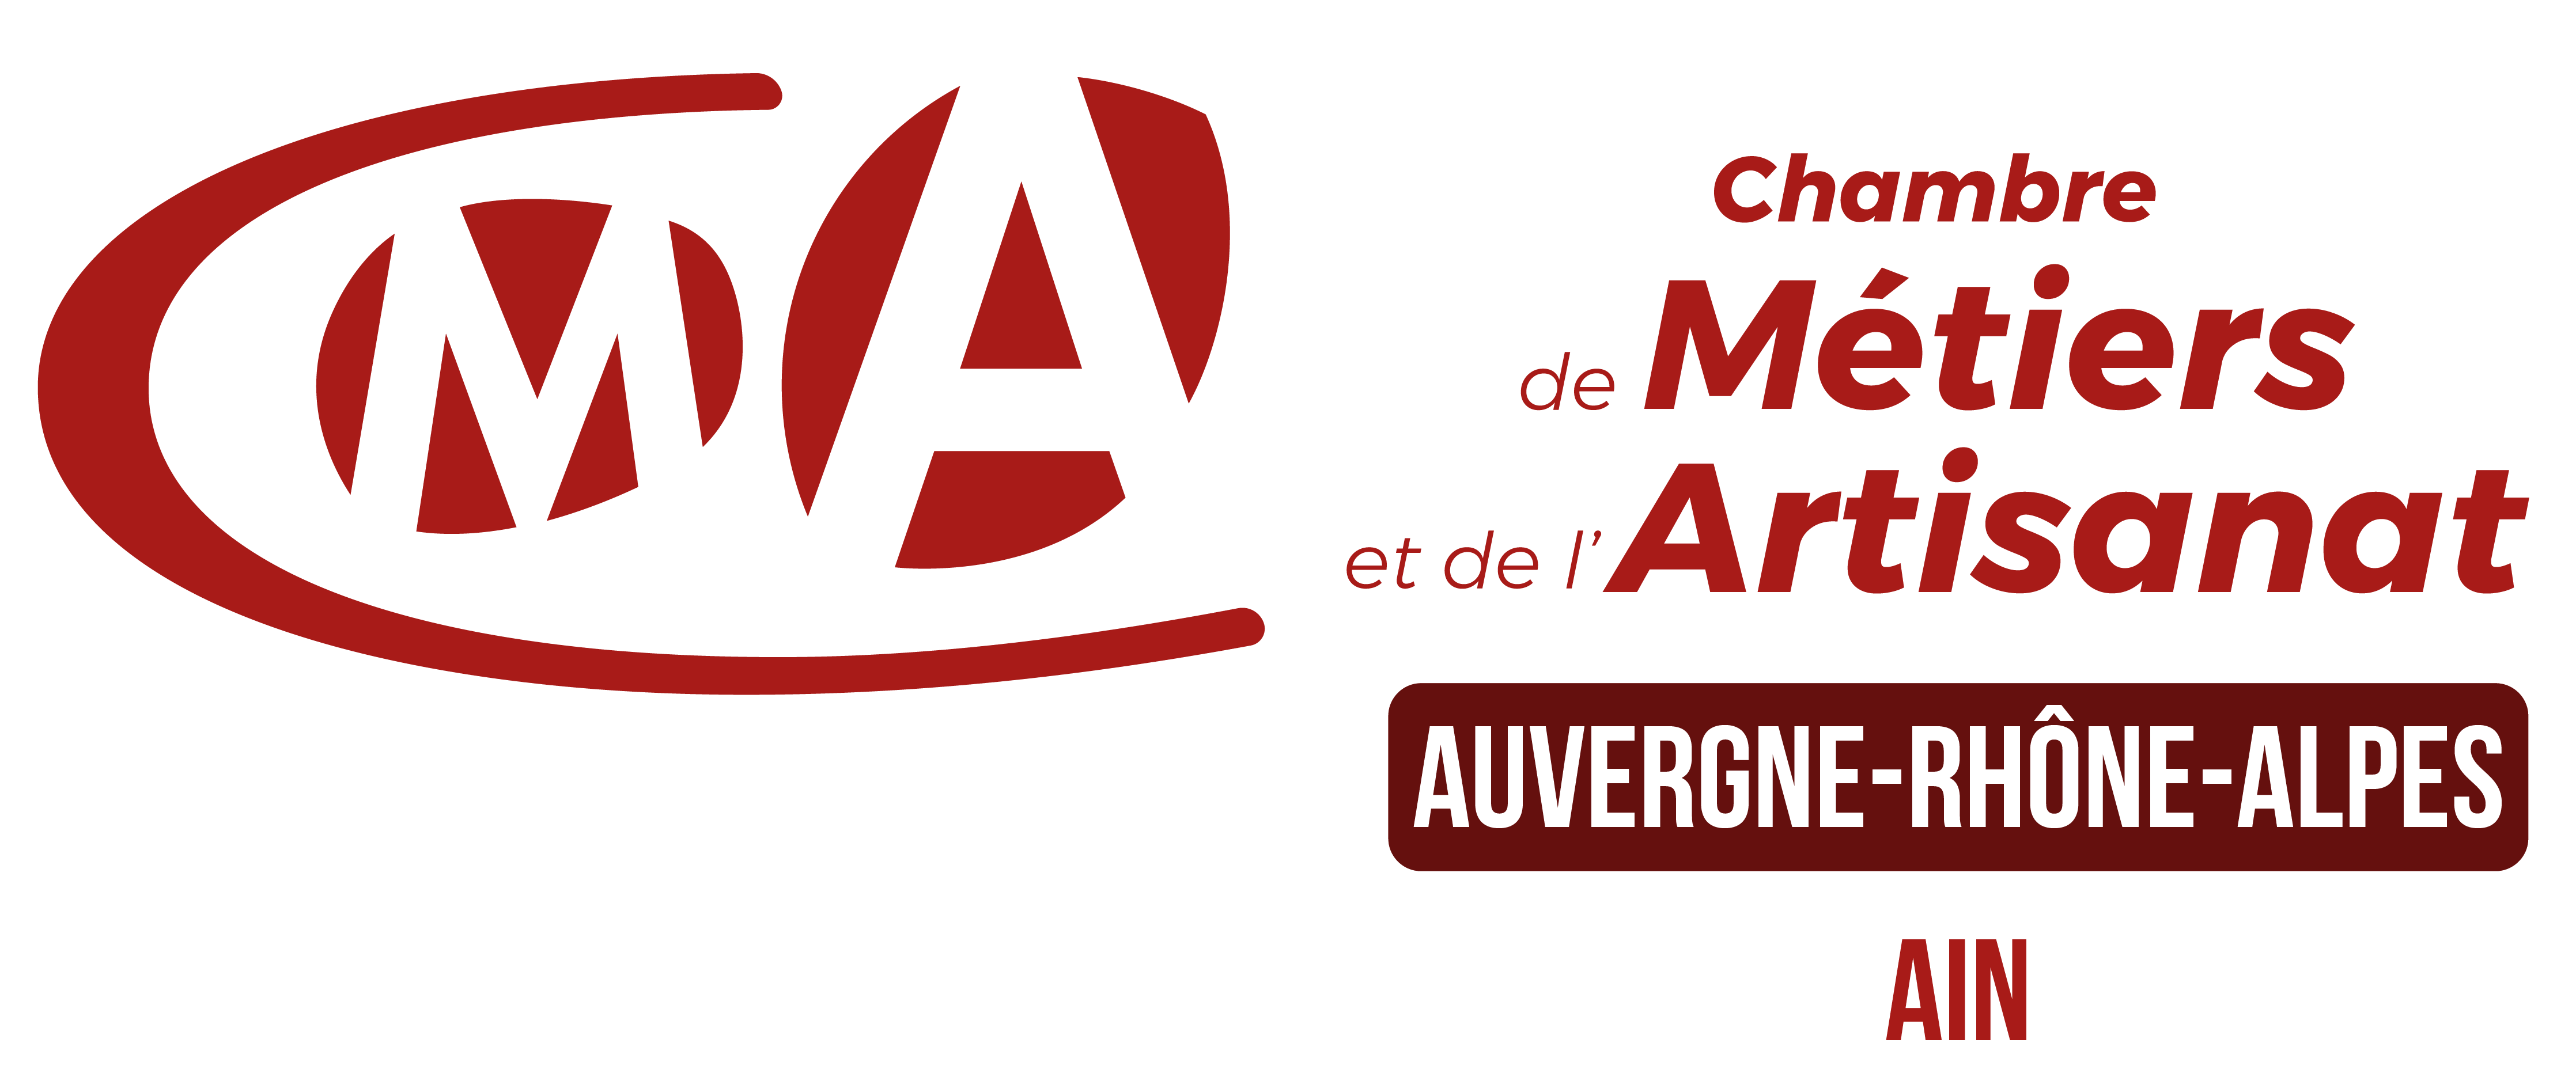 Logo CMA 2021